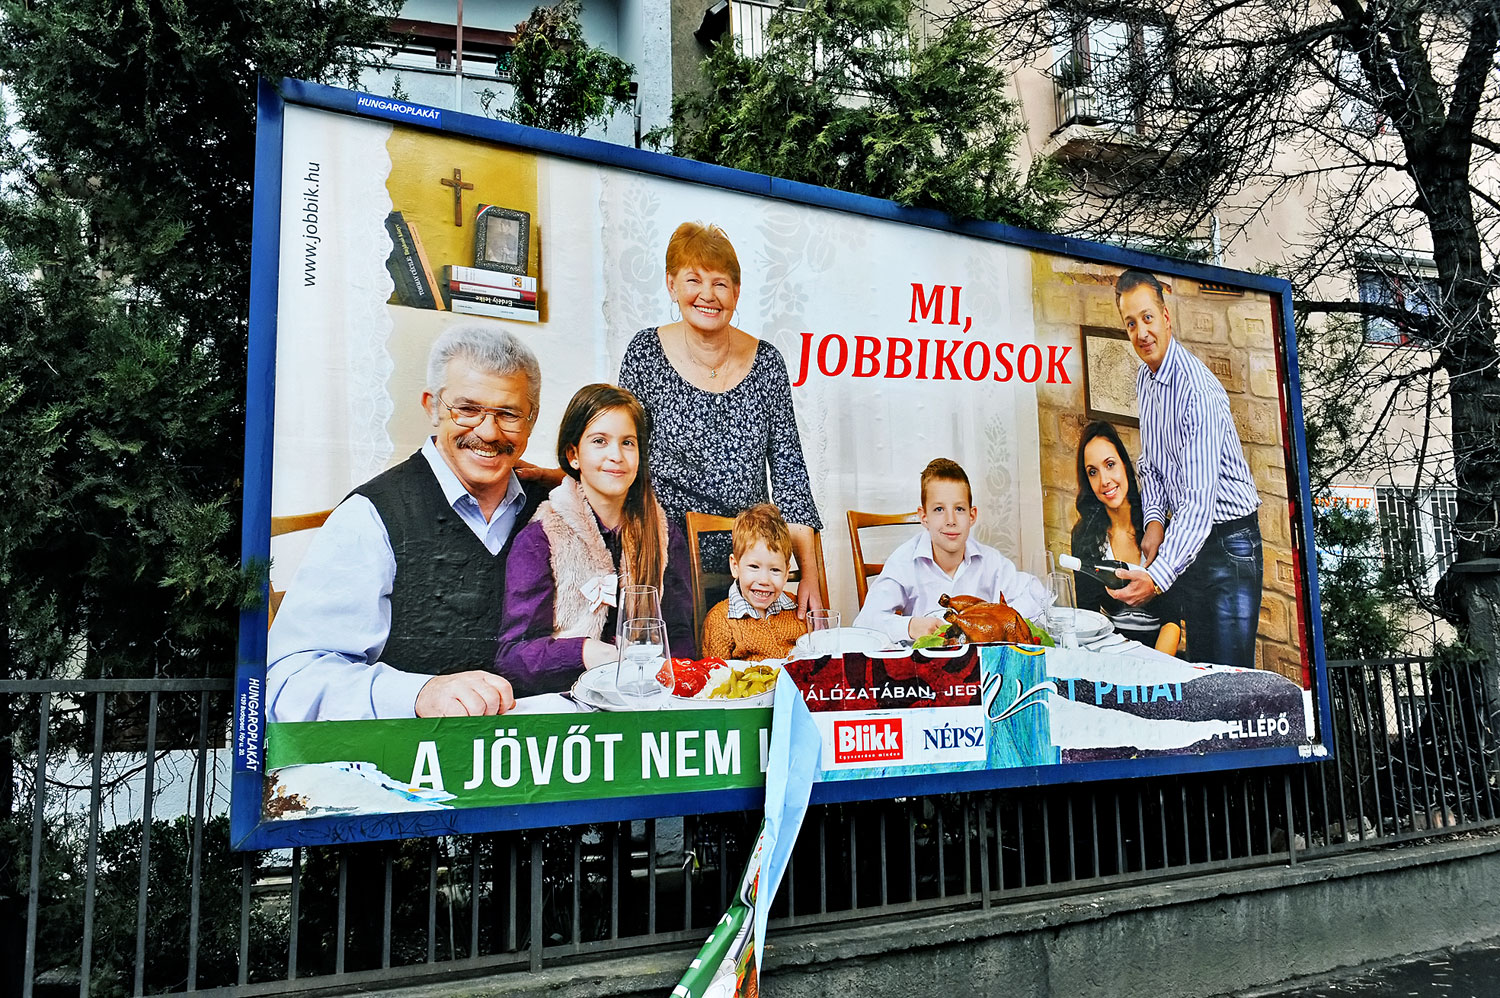 Ha a Jobbik kormányzati pozícióba jutna, az komolyan veszélyeztetné az uniós tagságunkat